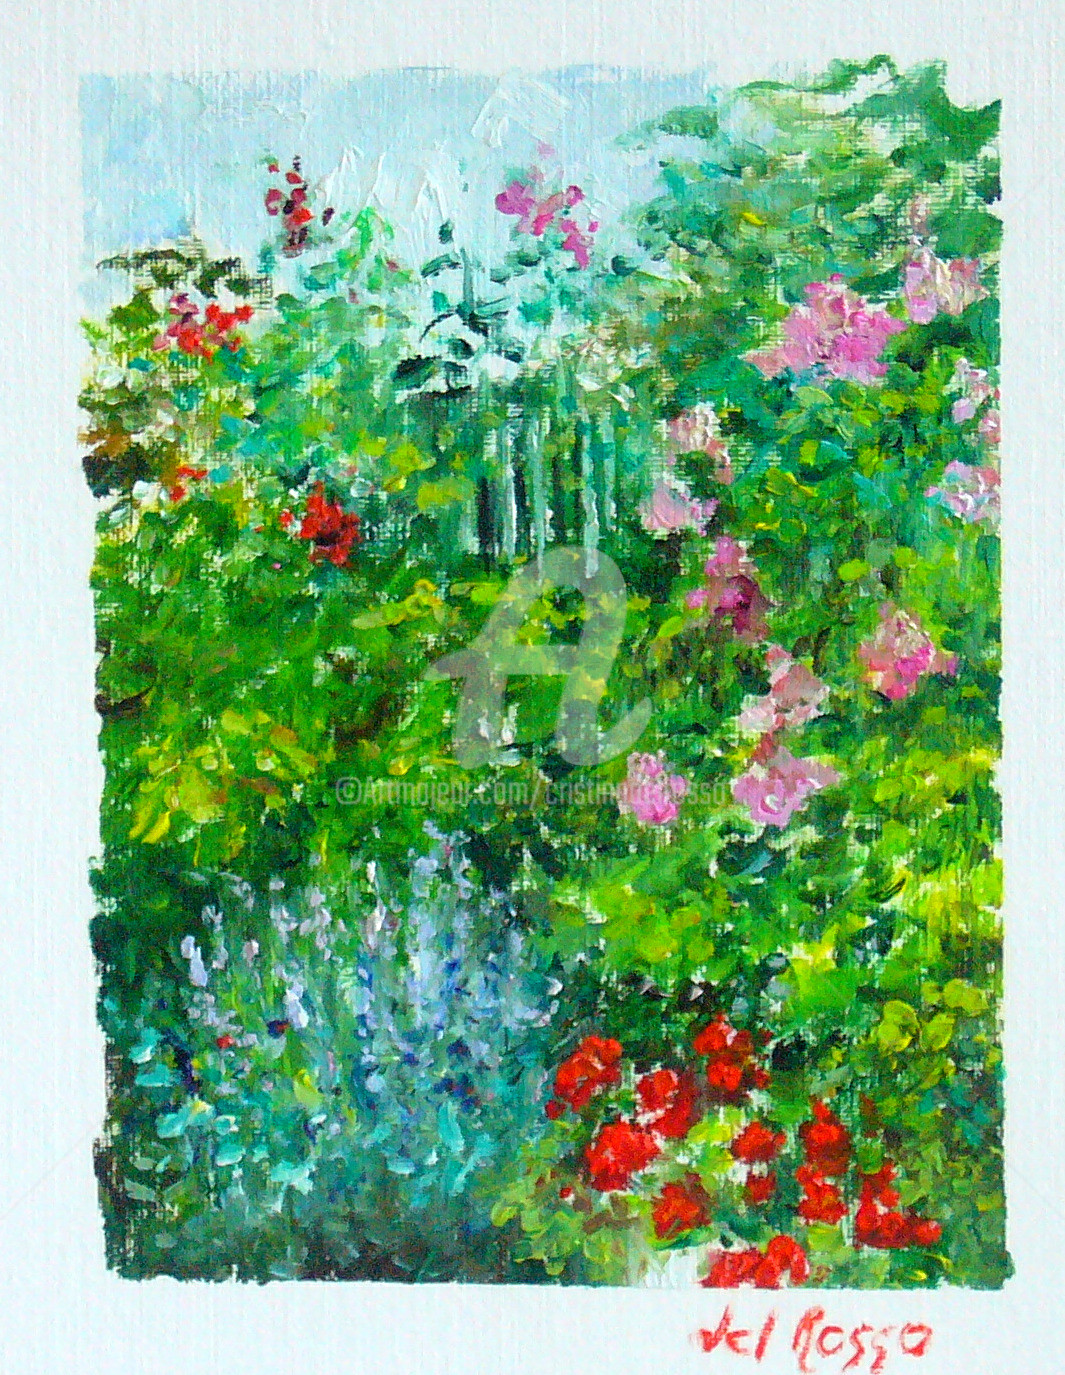 Cristina Del Rosso - Jardín. Para Monet (Garden. For Monet)